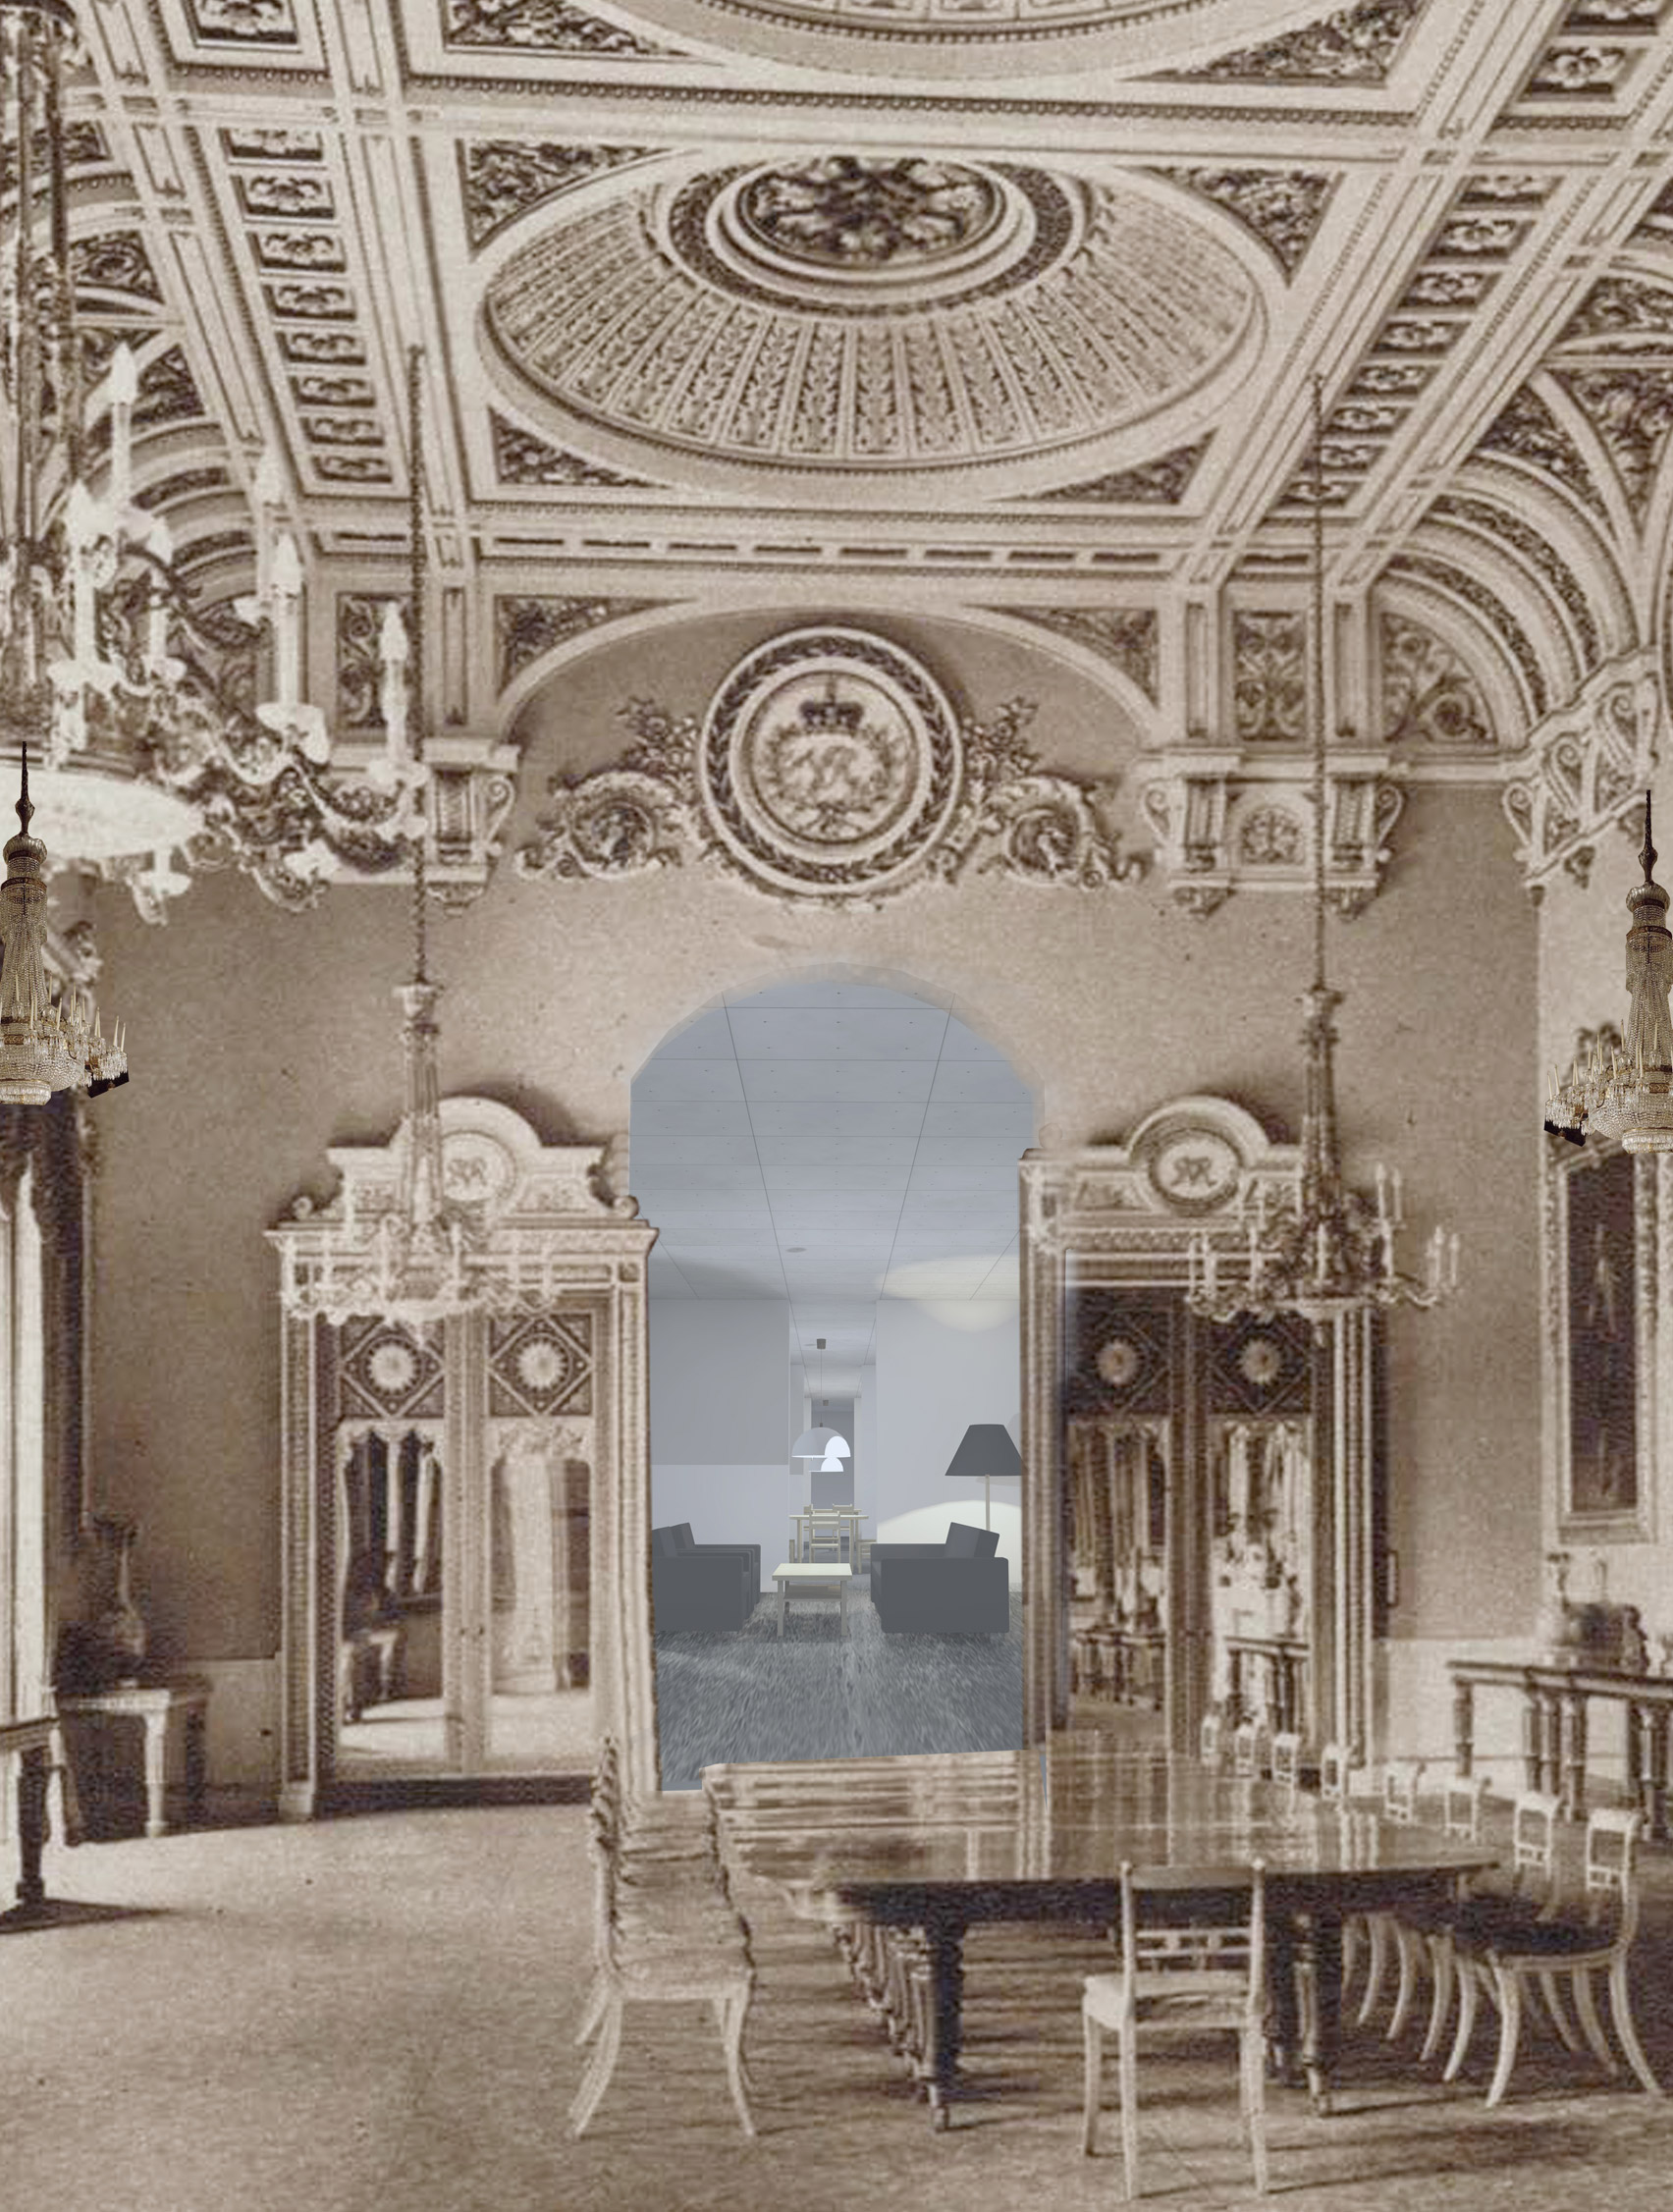 buckingham palace interior layout